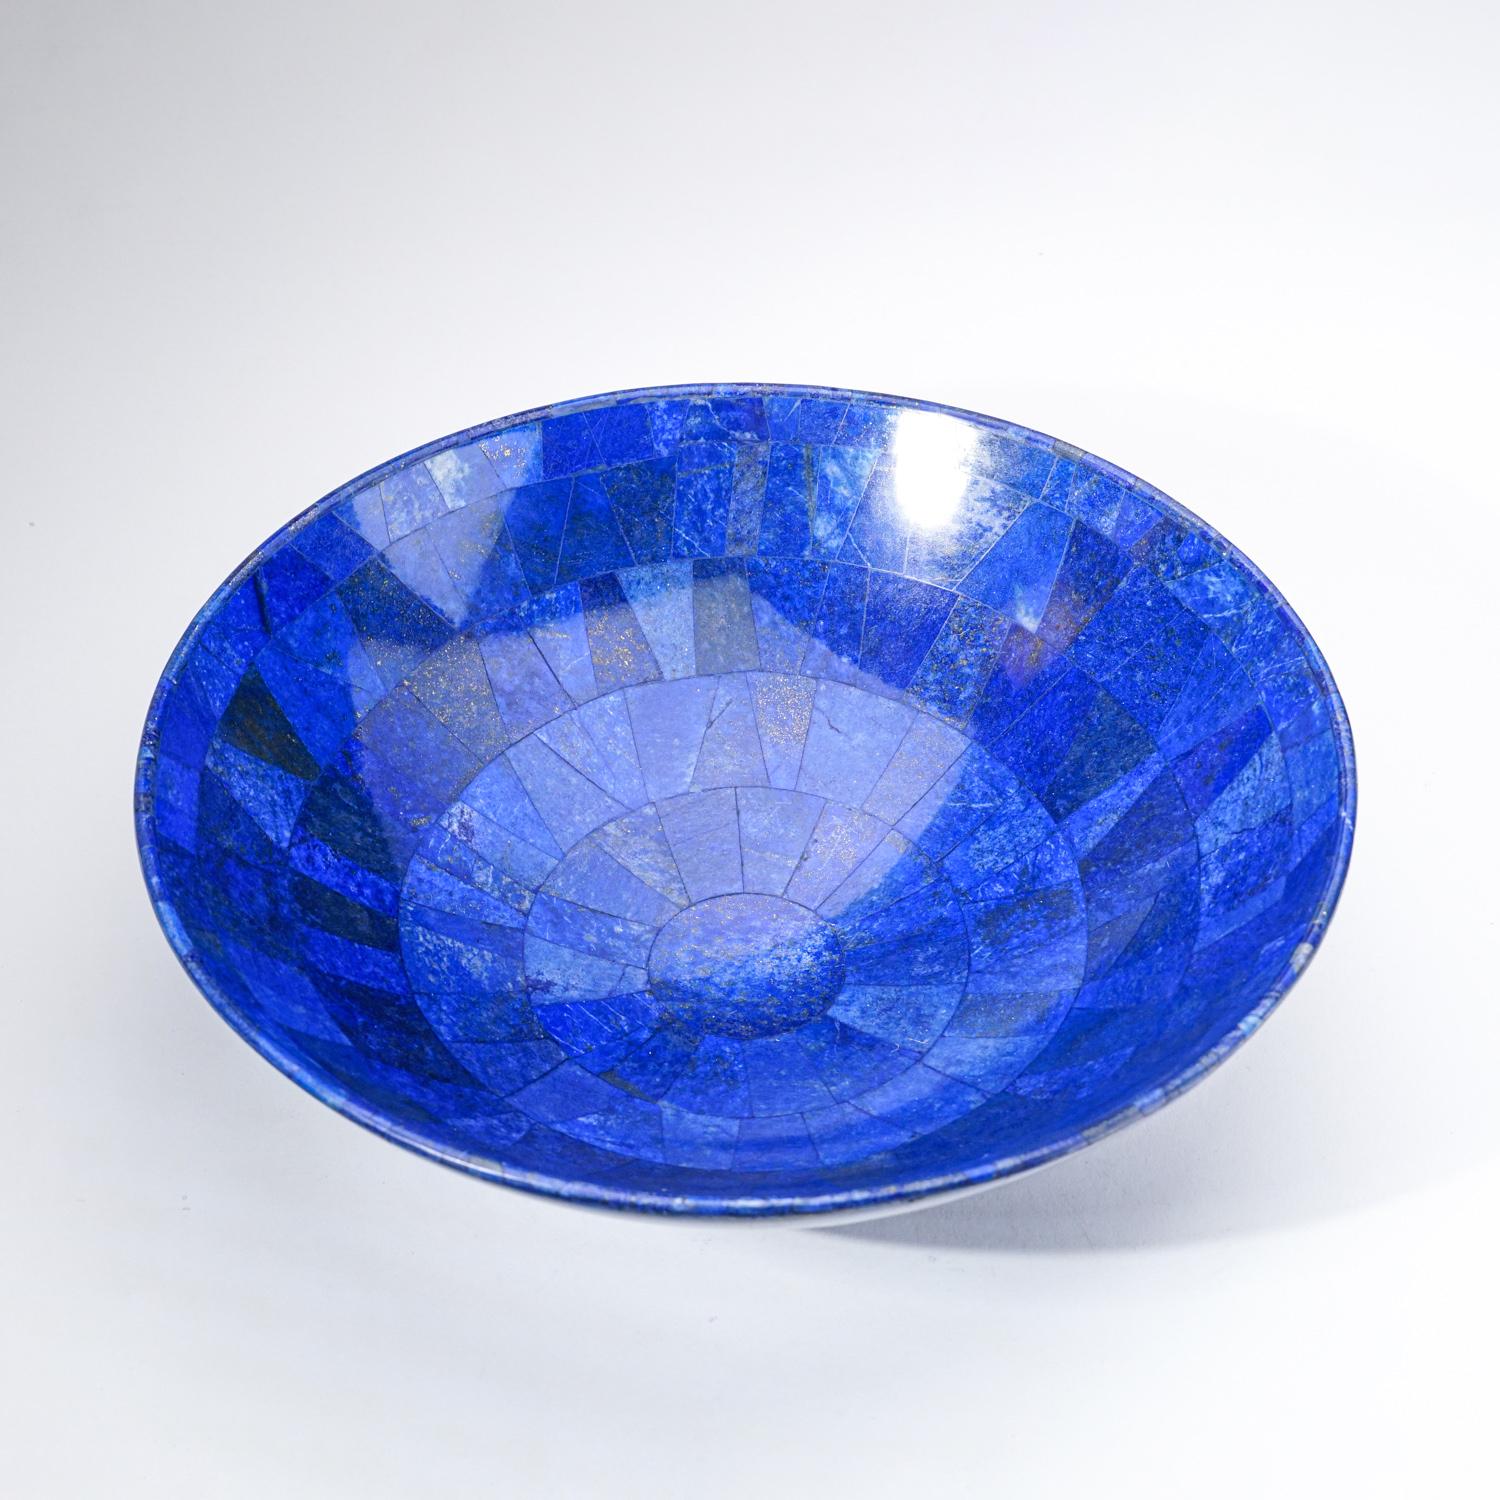 Bol en Lapis Lazuli naturel de qualité AAA, poli à la main, en provenance d'Afghanistan.  Ce spécimen a une riche couleur bleu royal électrique enrichie de microcristaux de pyrite scintillants. Ce bol en lapis de qualité supérieure est un exemple